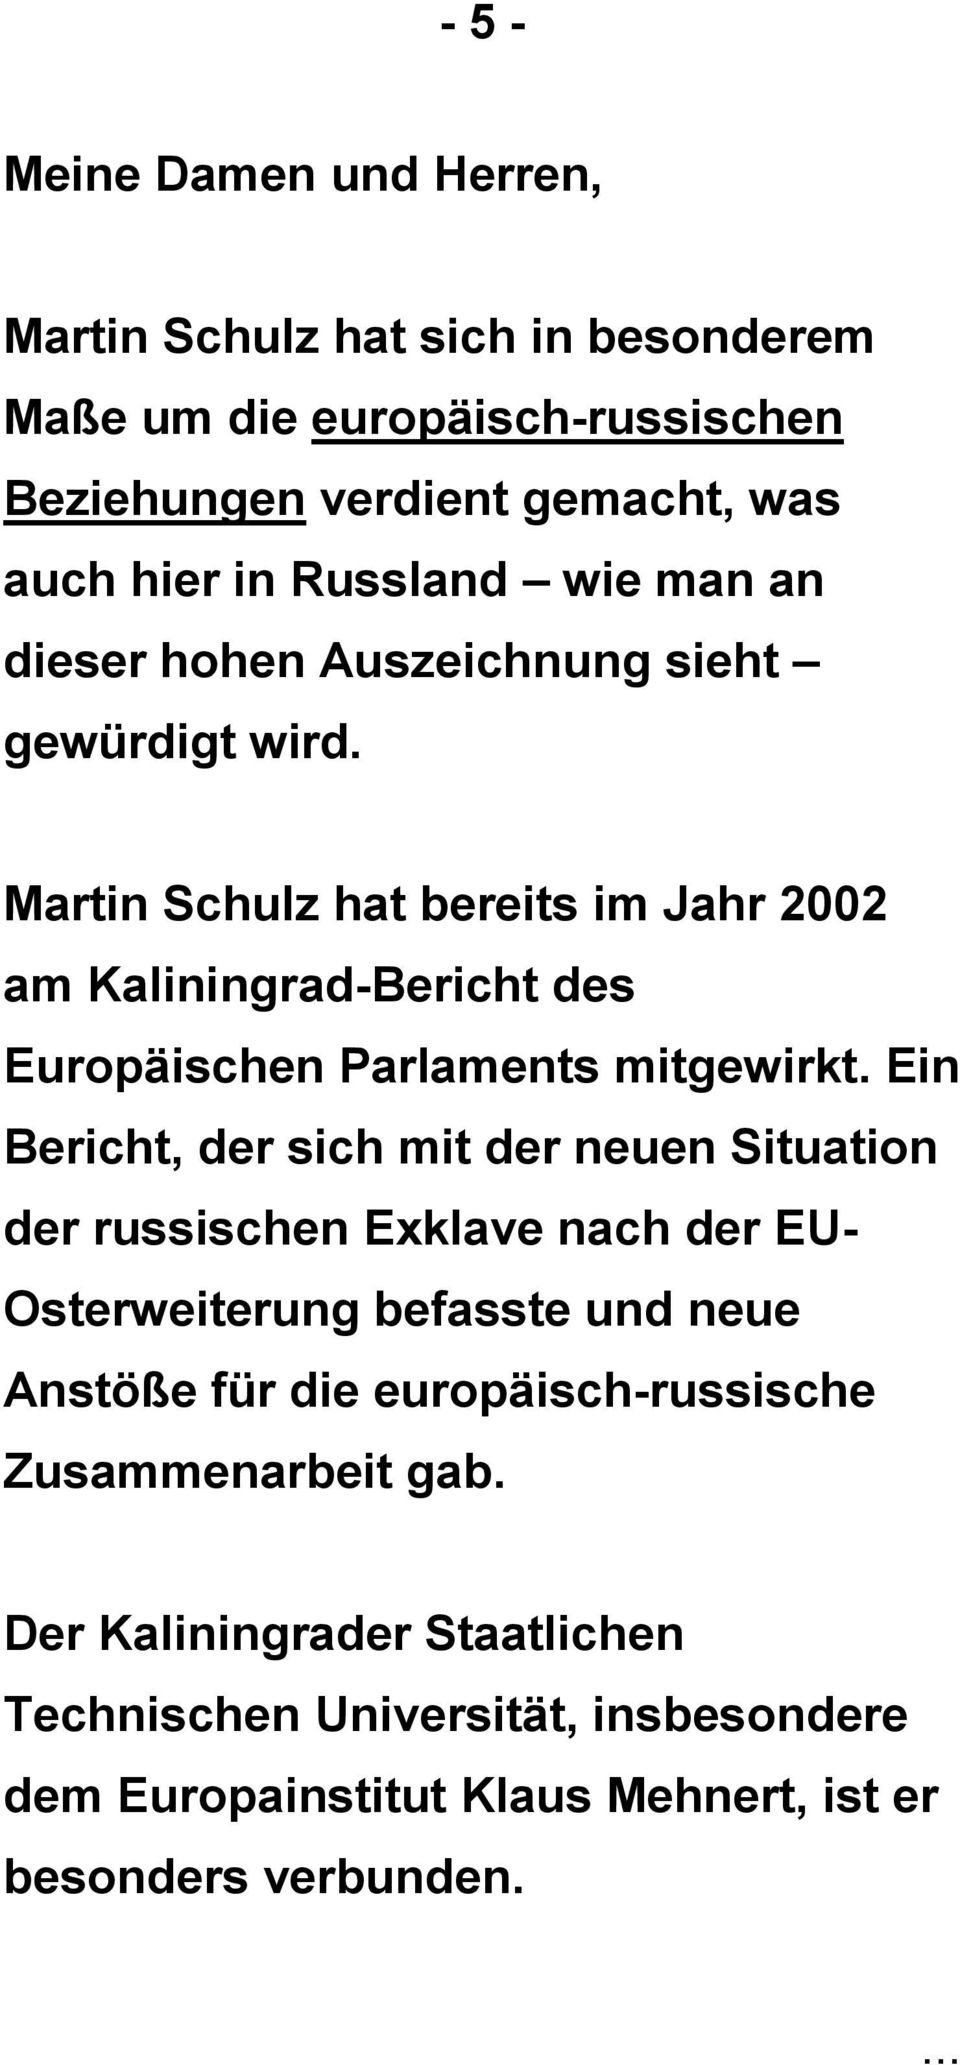 Martin Schulz hat bereits im Jahr 2002 am Kaliningrad-Bericht des Europäischen Parlaments mitgewirkt.